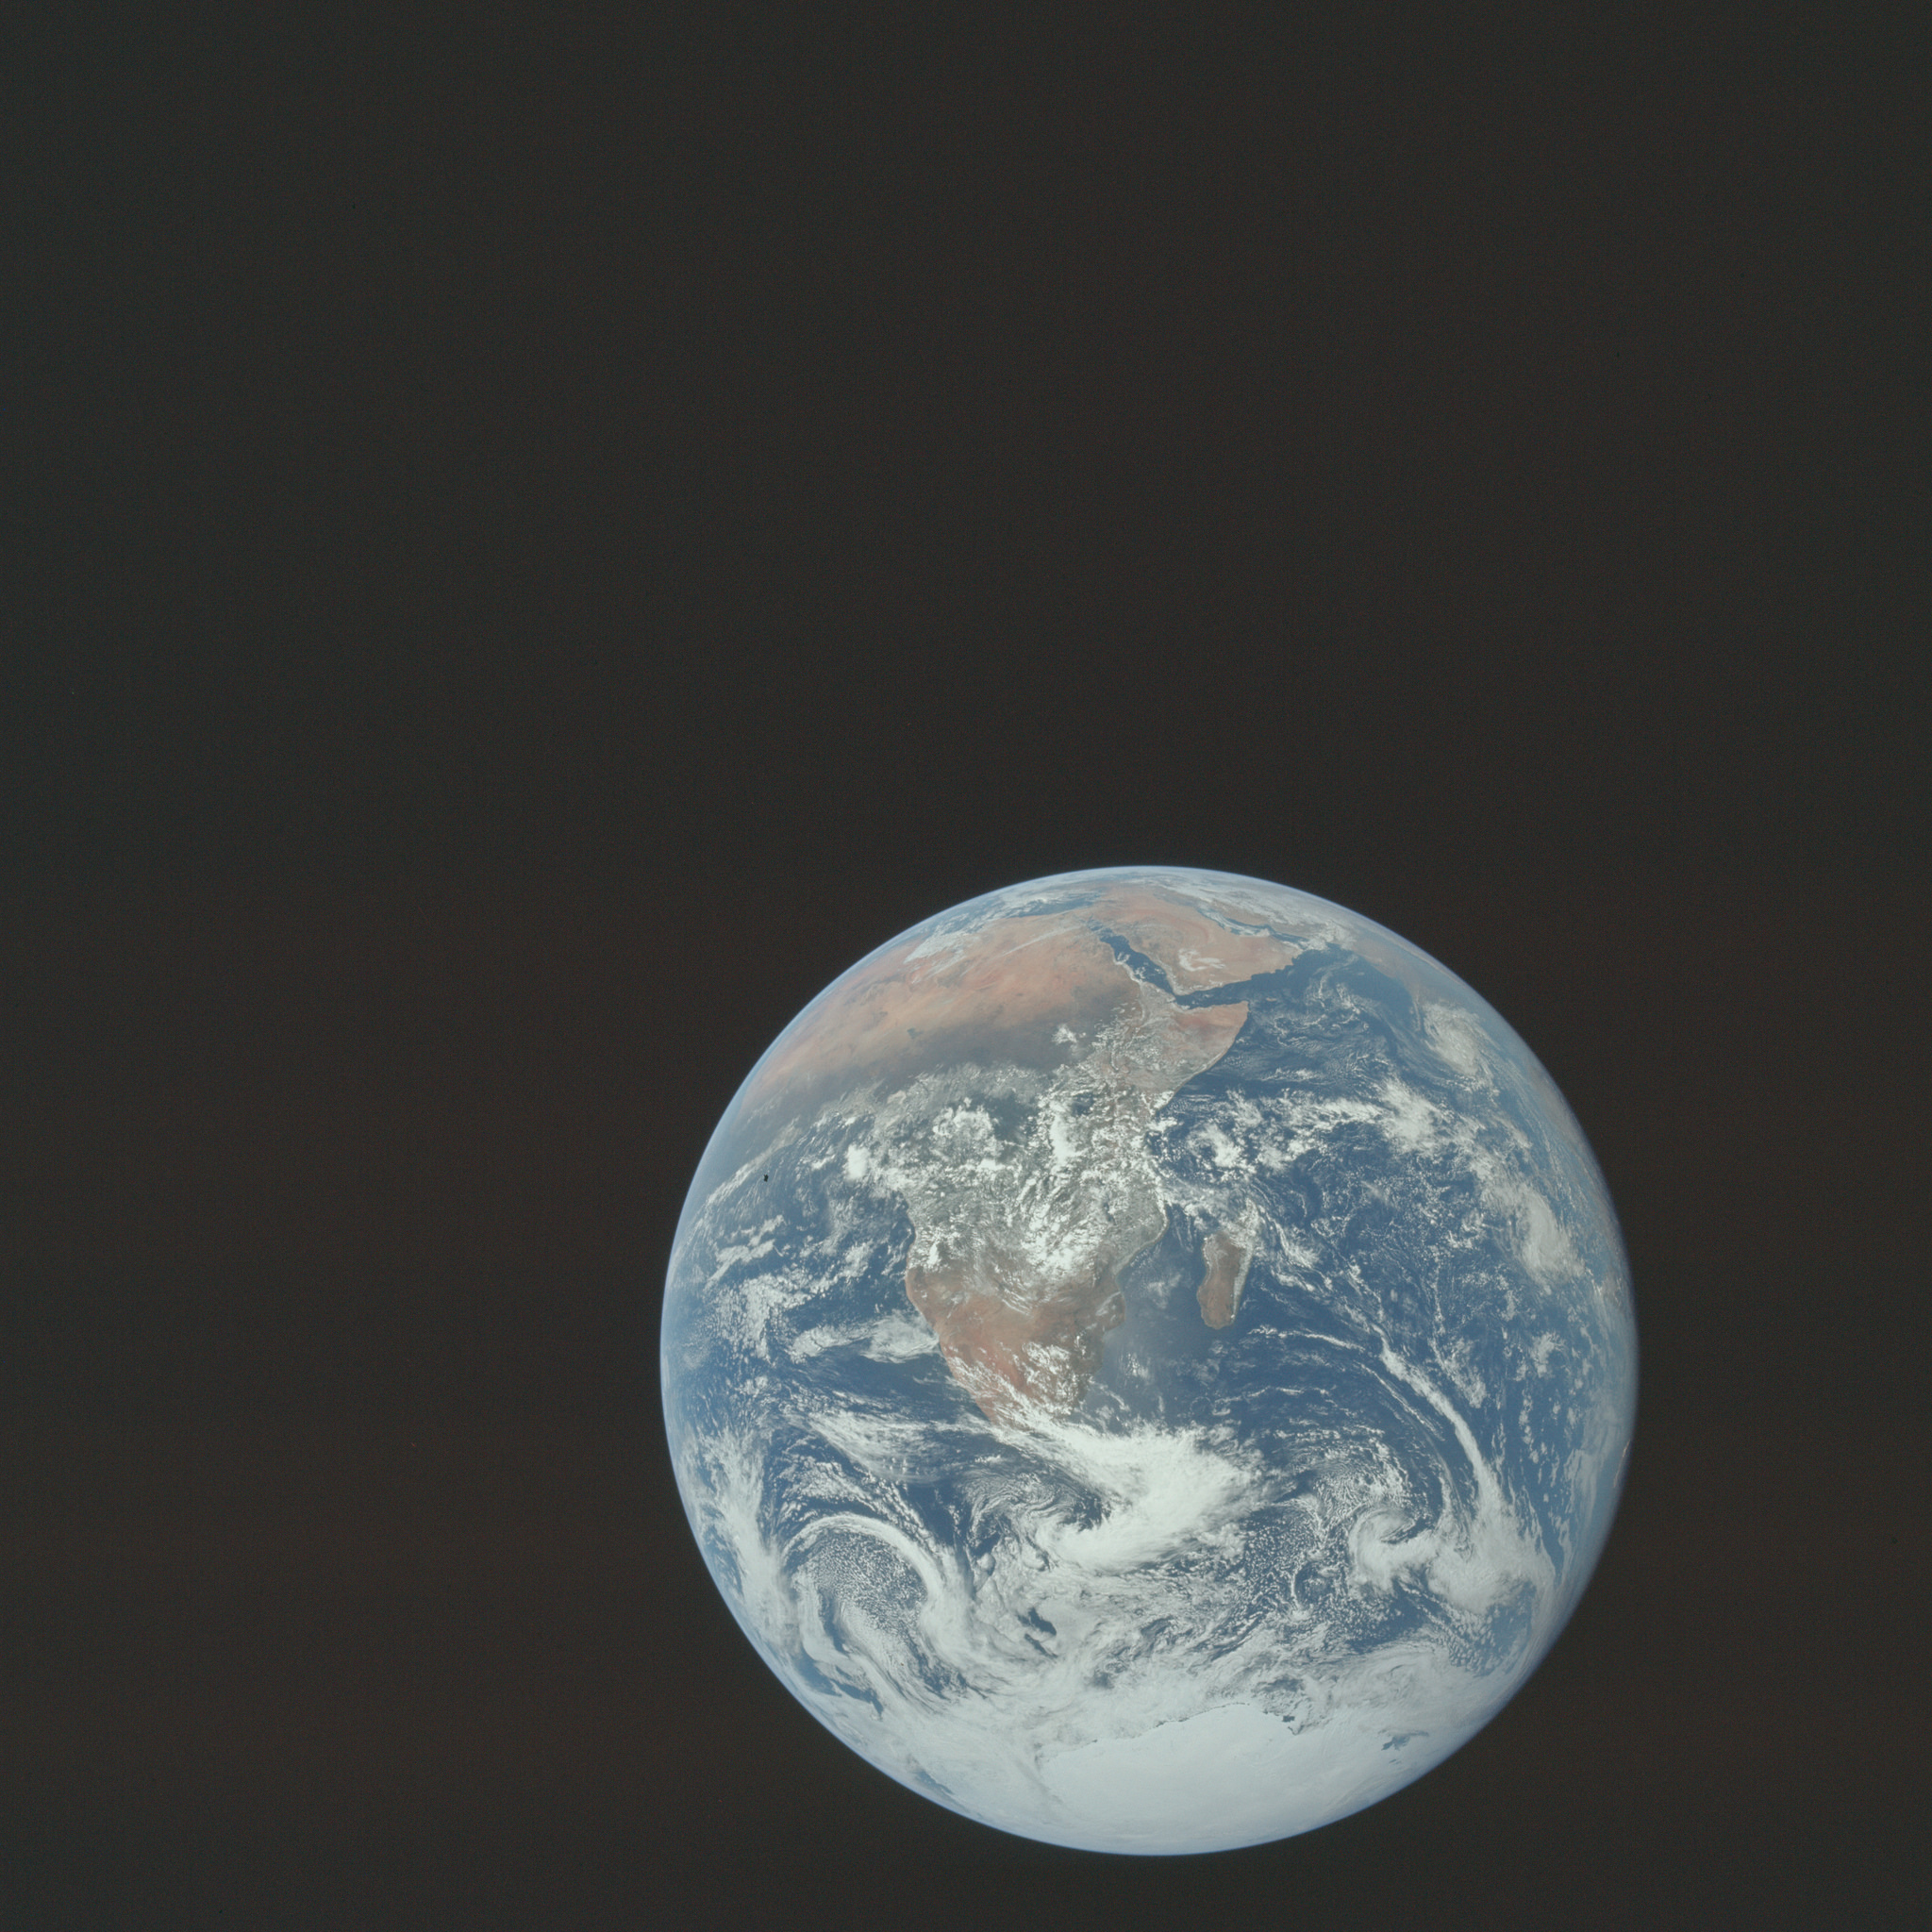 "The Blue Marble" - Obraz Ziemi widziany przez załogę Apollo 17 podróżującą w kierunku Księżyca. Obszar widoczny na zdjęciu rozciąga się od Morza Śródziemnego po lodowe czapy Antarktydy na południu. Jest to pierwszy raz, gdy tor lotu Apolla umożliwia sfotografowanie czap lodowych na Antarktydzie. Niemal całe wybrzeże Afryki jest dobrze widoczne.